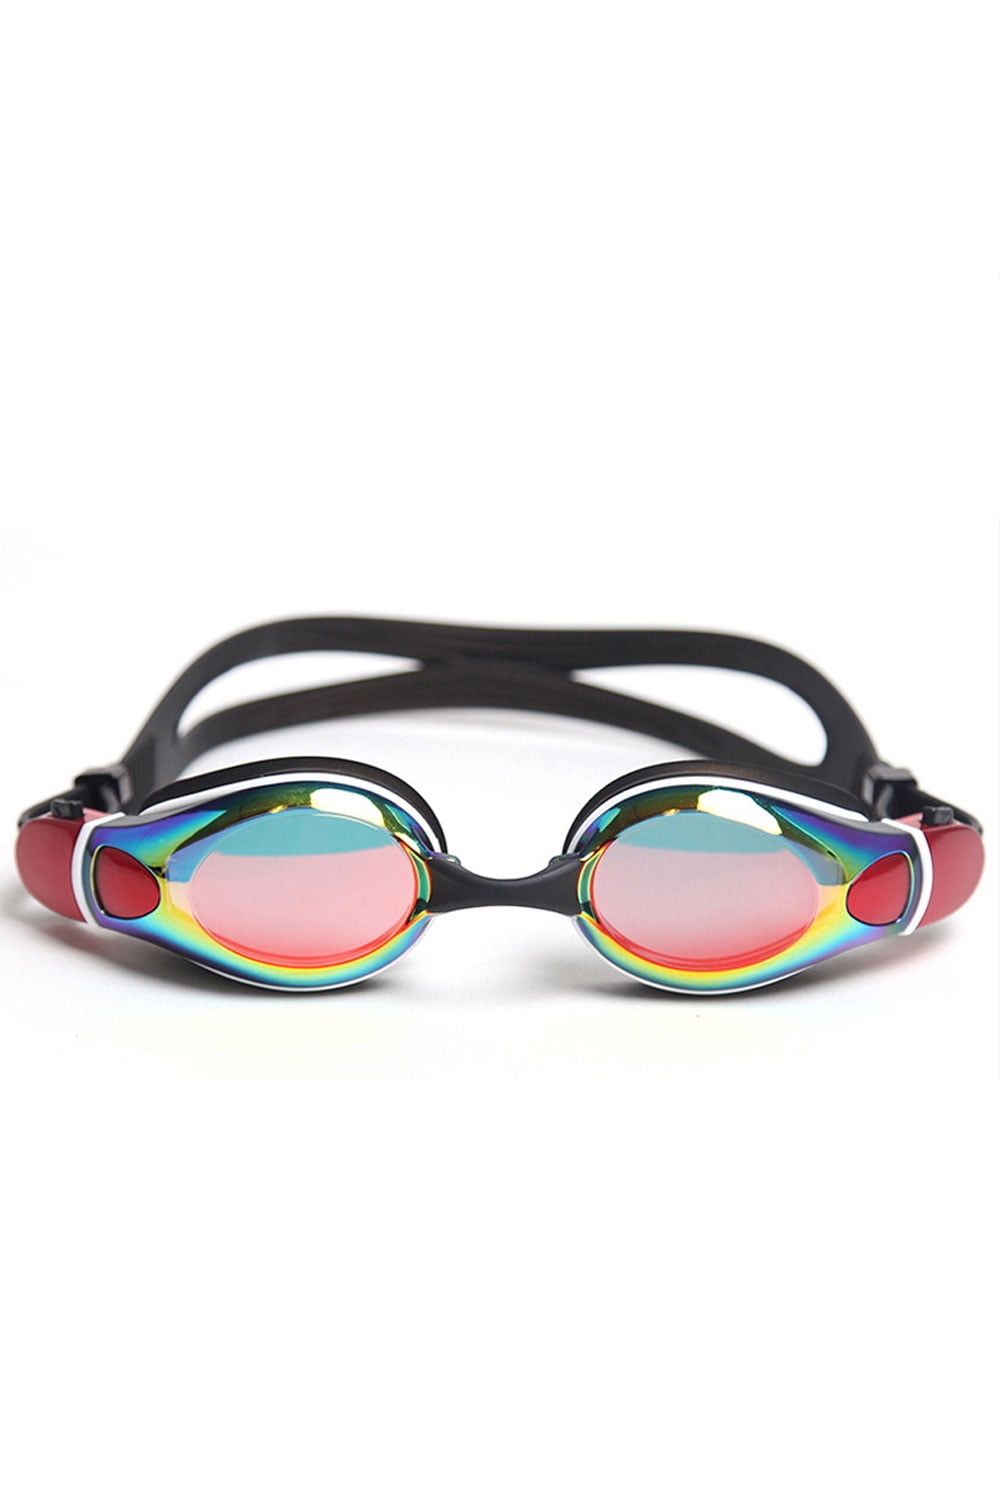 Swiming Cap Hat Water Sports Surp Waterproof Swim Goggles Anti-fog Glasses 